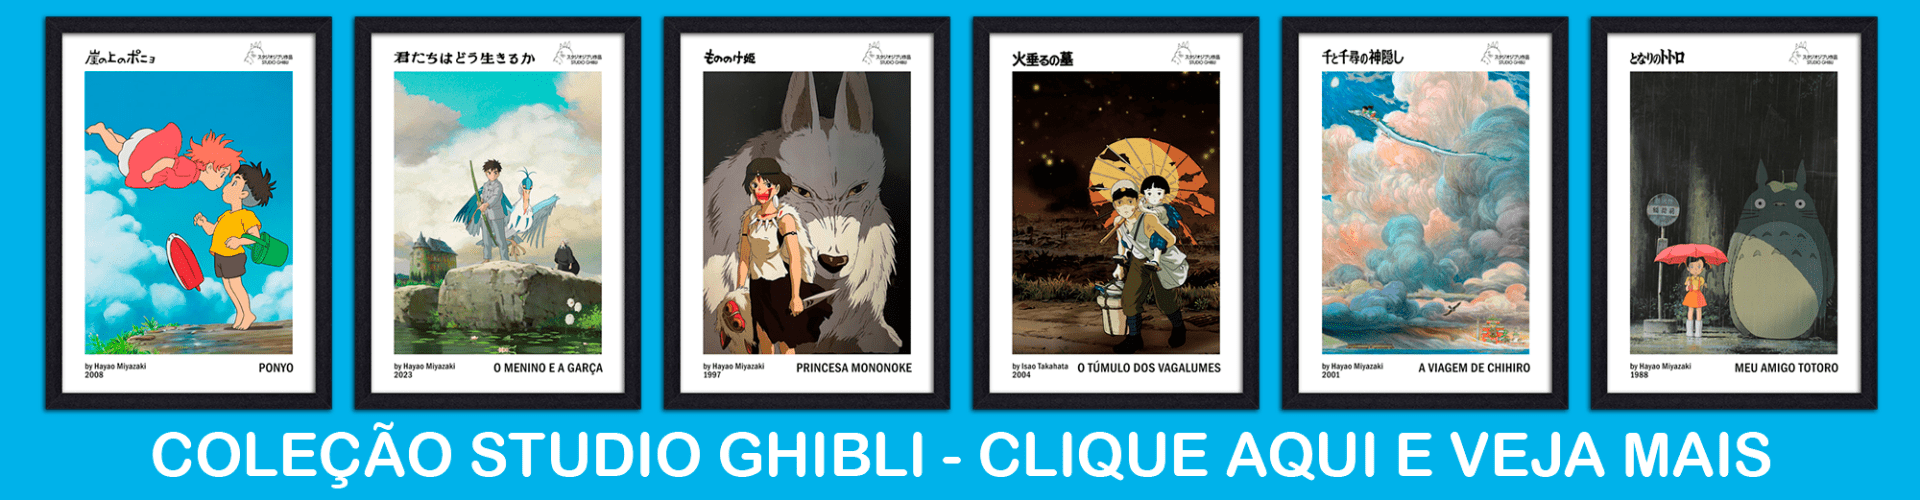 Coleção Studio Ghibli